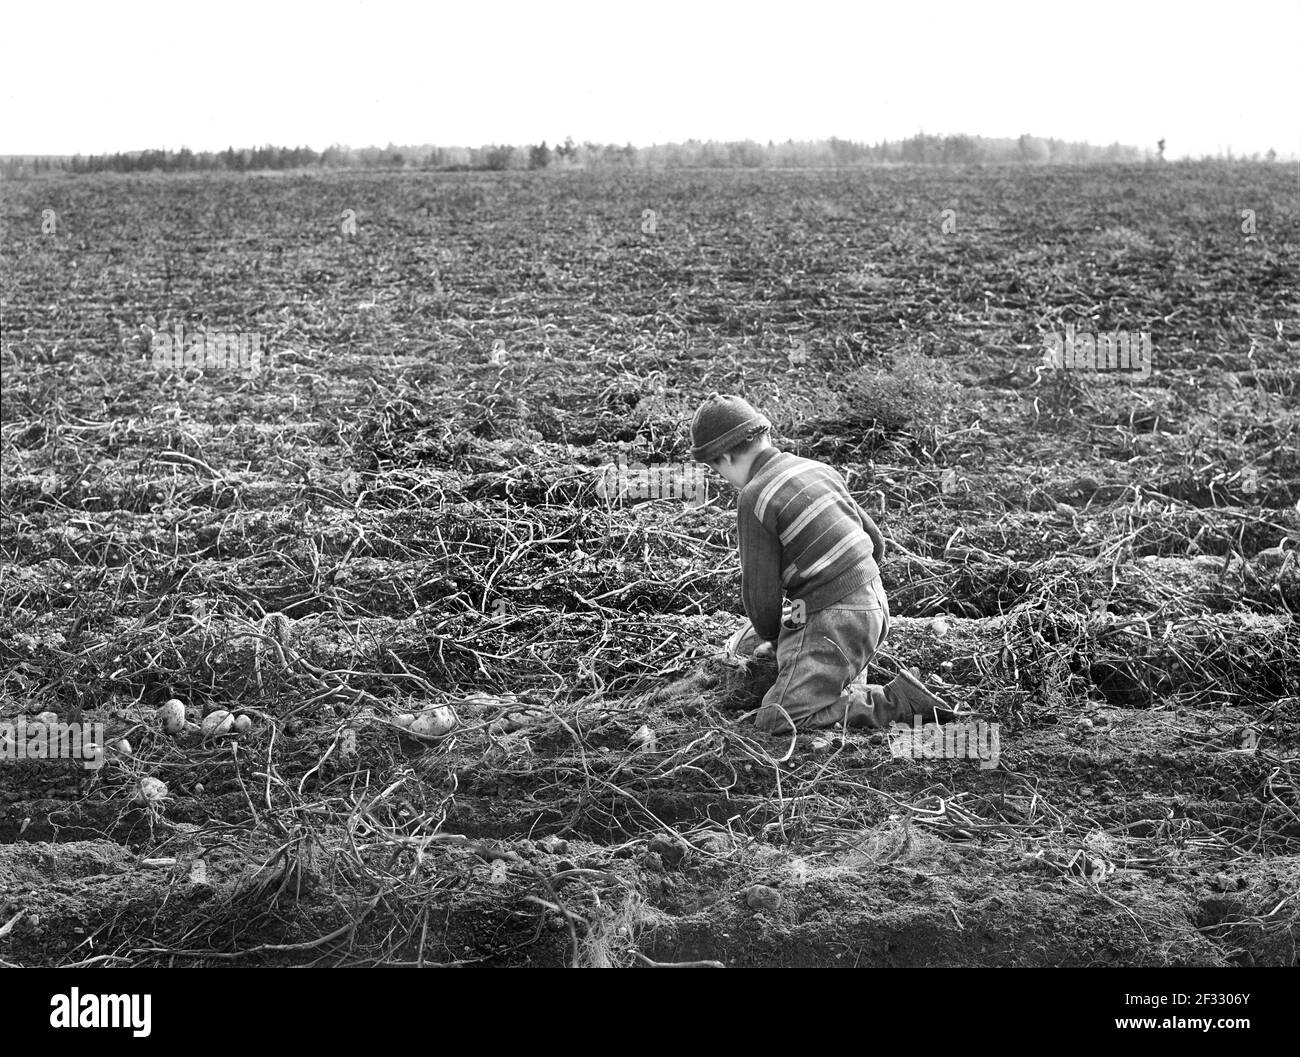 Cueillette de pommes de terre par des enfants dans une grande ferme - les écoles ne s'ouvrent pas tant que les pommes de terre ne sont pas récoltées, près de Caribou, Maine, États-Unis, Jack Delano, Administration américaine de la sécurité agricole, octobre 1940 Banque D'Images